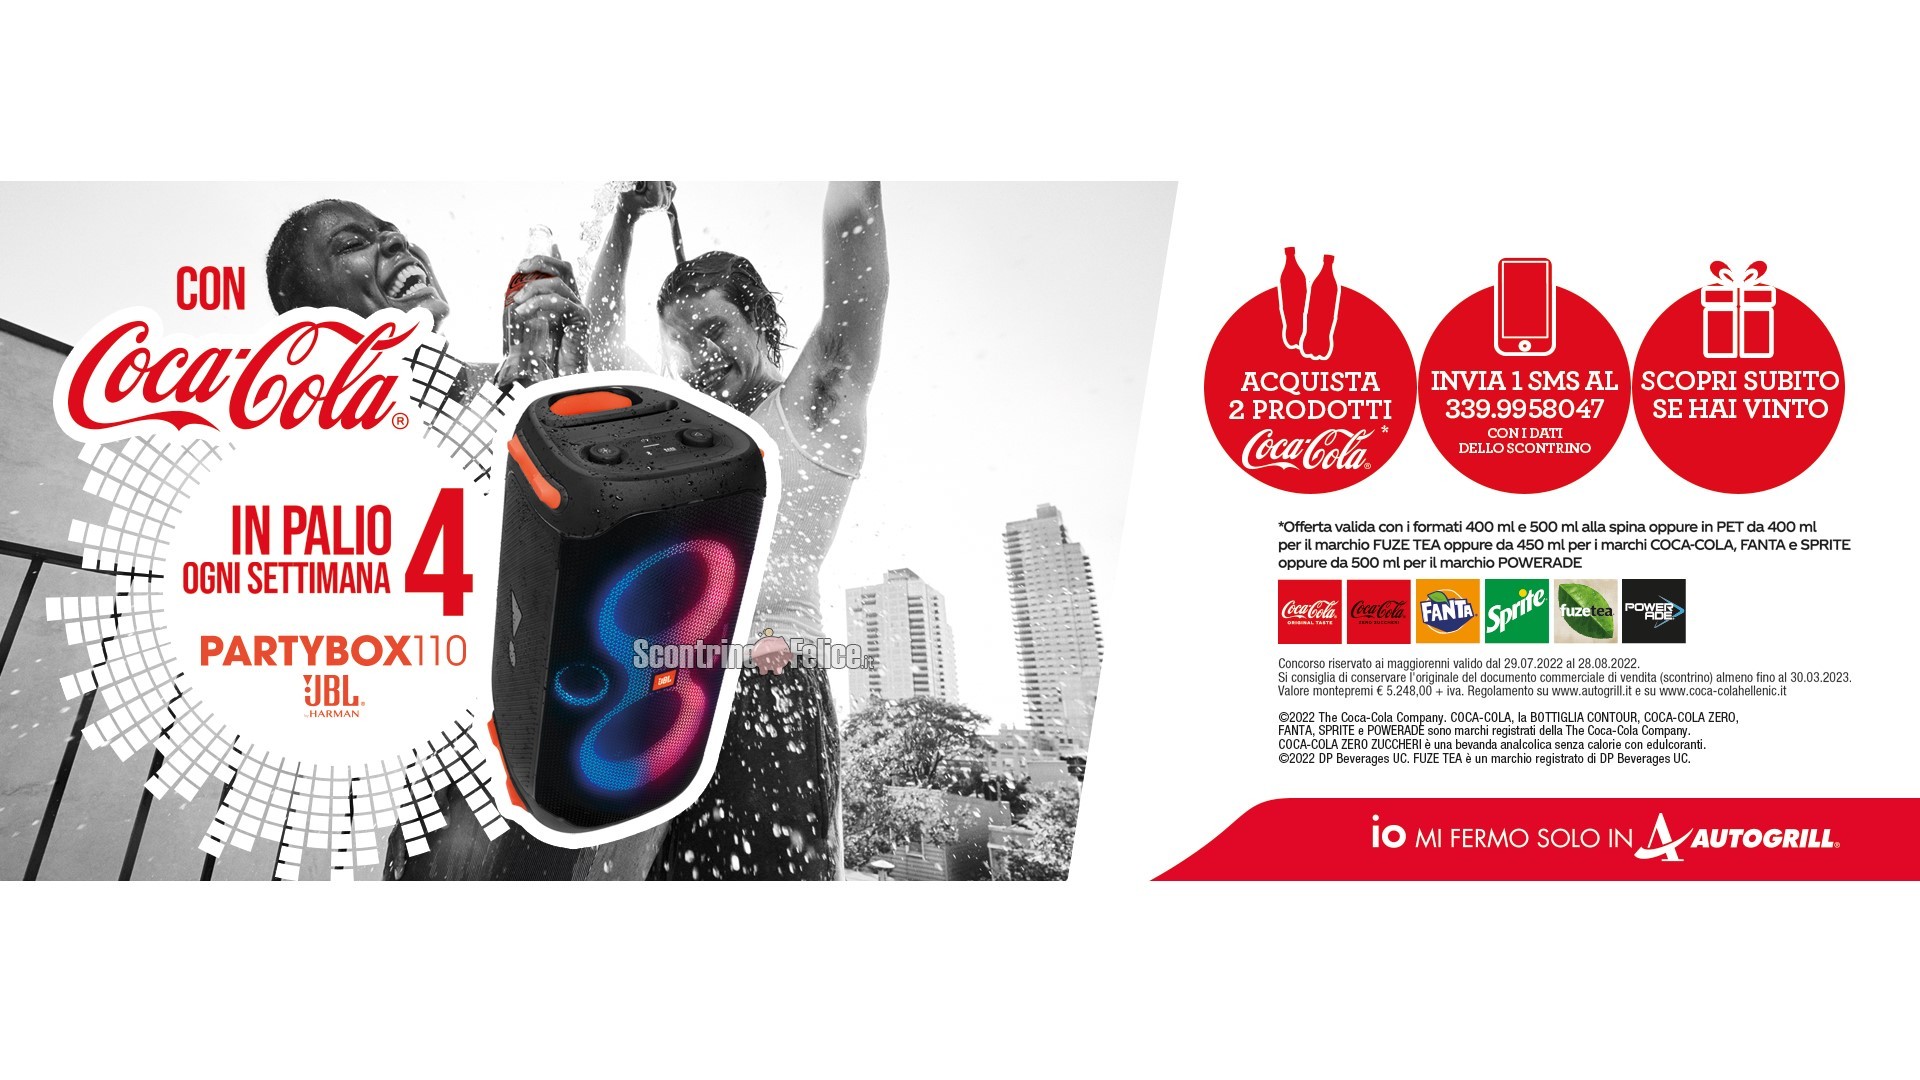 Concorso Coca Cola da Autogrill: vinci 4 casse JBL partybox 110 a settimana!